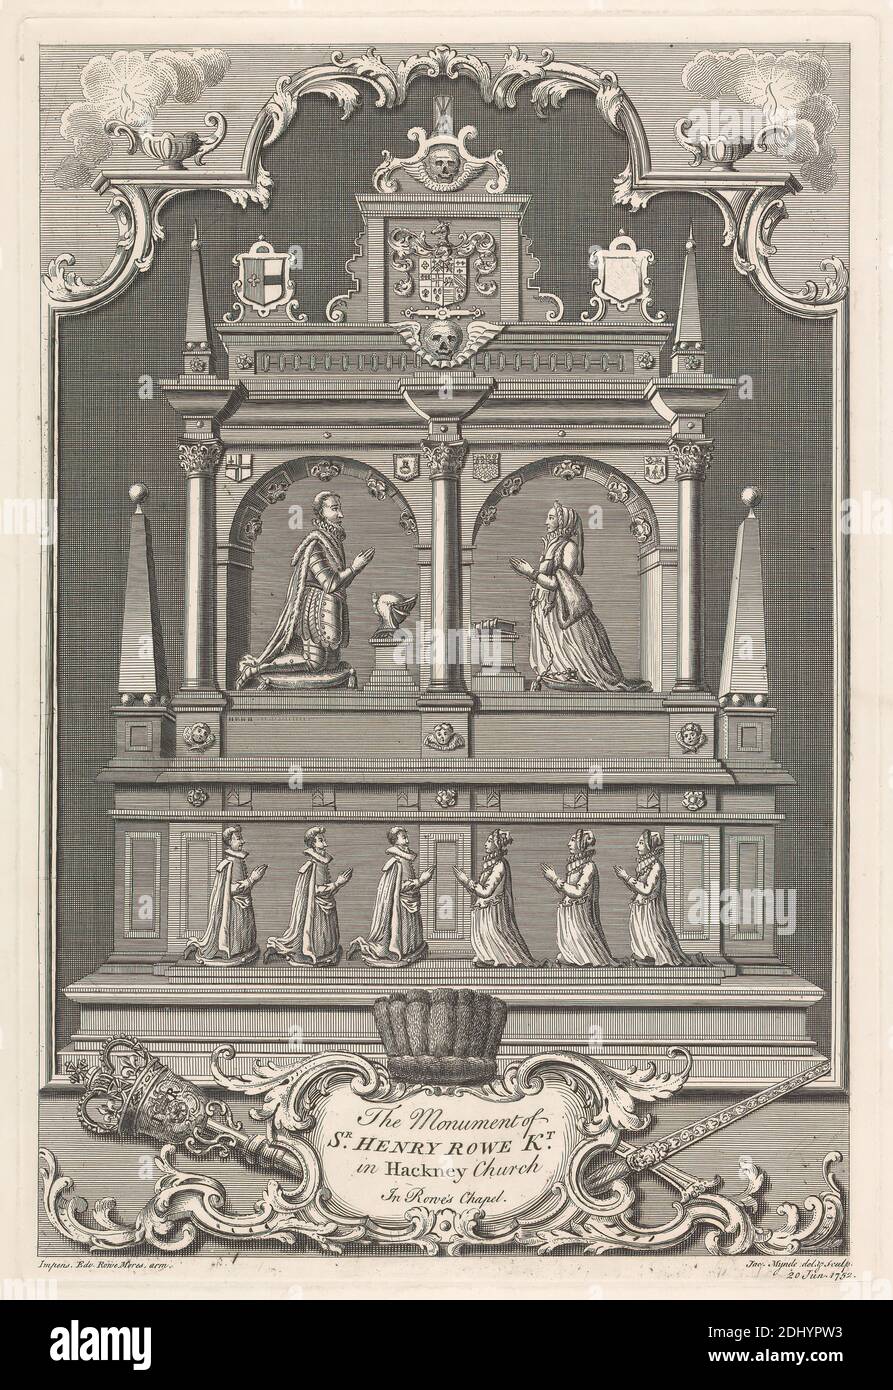 Le monument de Sir Henry Rowe, Kt. À l'église Hackney, J. Mynde, actif de 1740 à 1770, après J. Mynde, actif de 1740 à 1770, 1752, gravure Banque D'Images